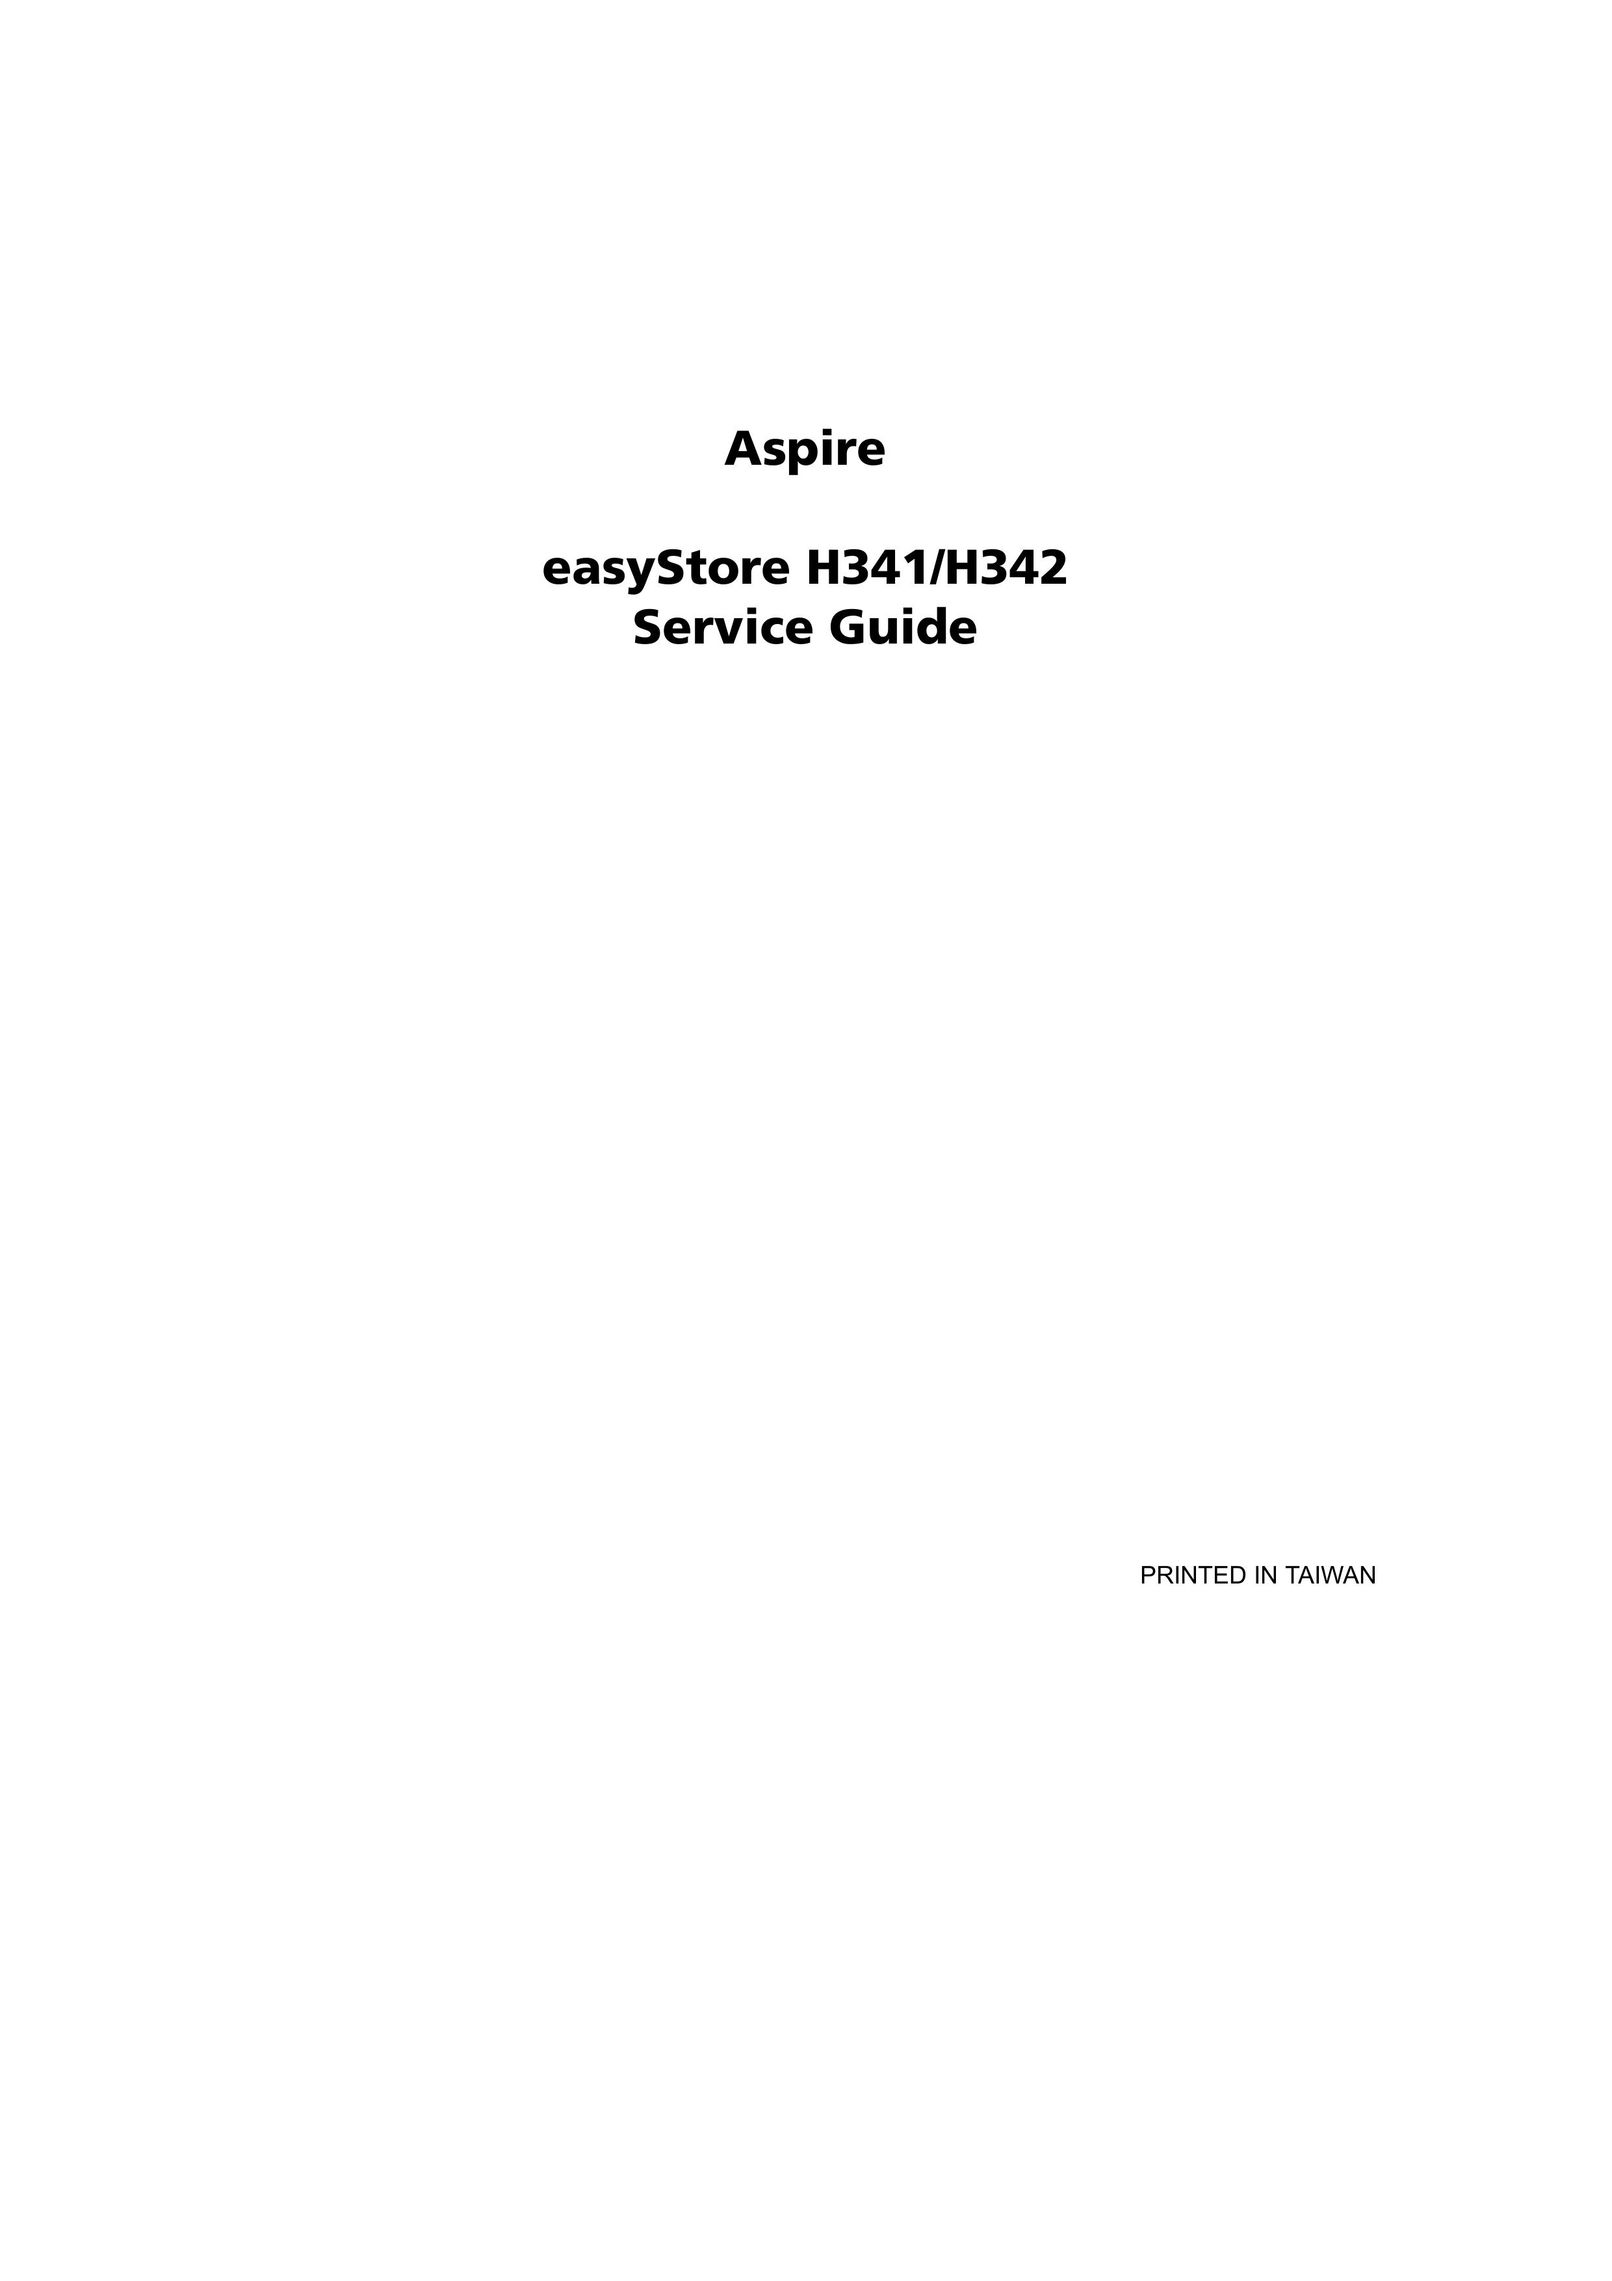 Aspire Digital H341 Personal Computer User Manual